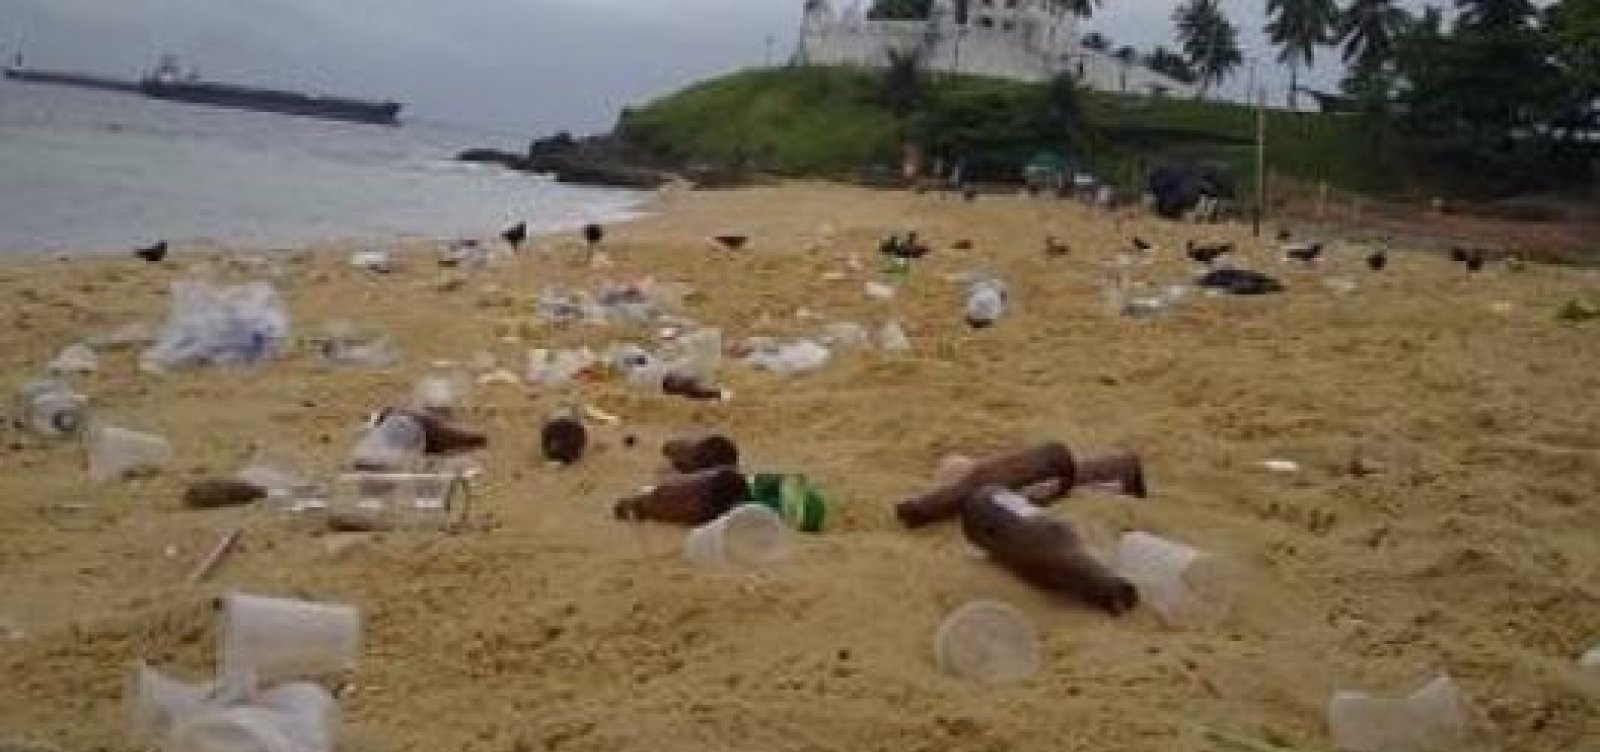 Após aglomeração, praia na Cidade Baixa fica coberta por lixo